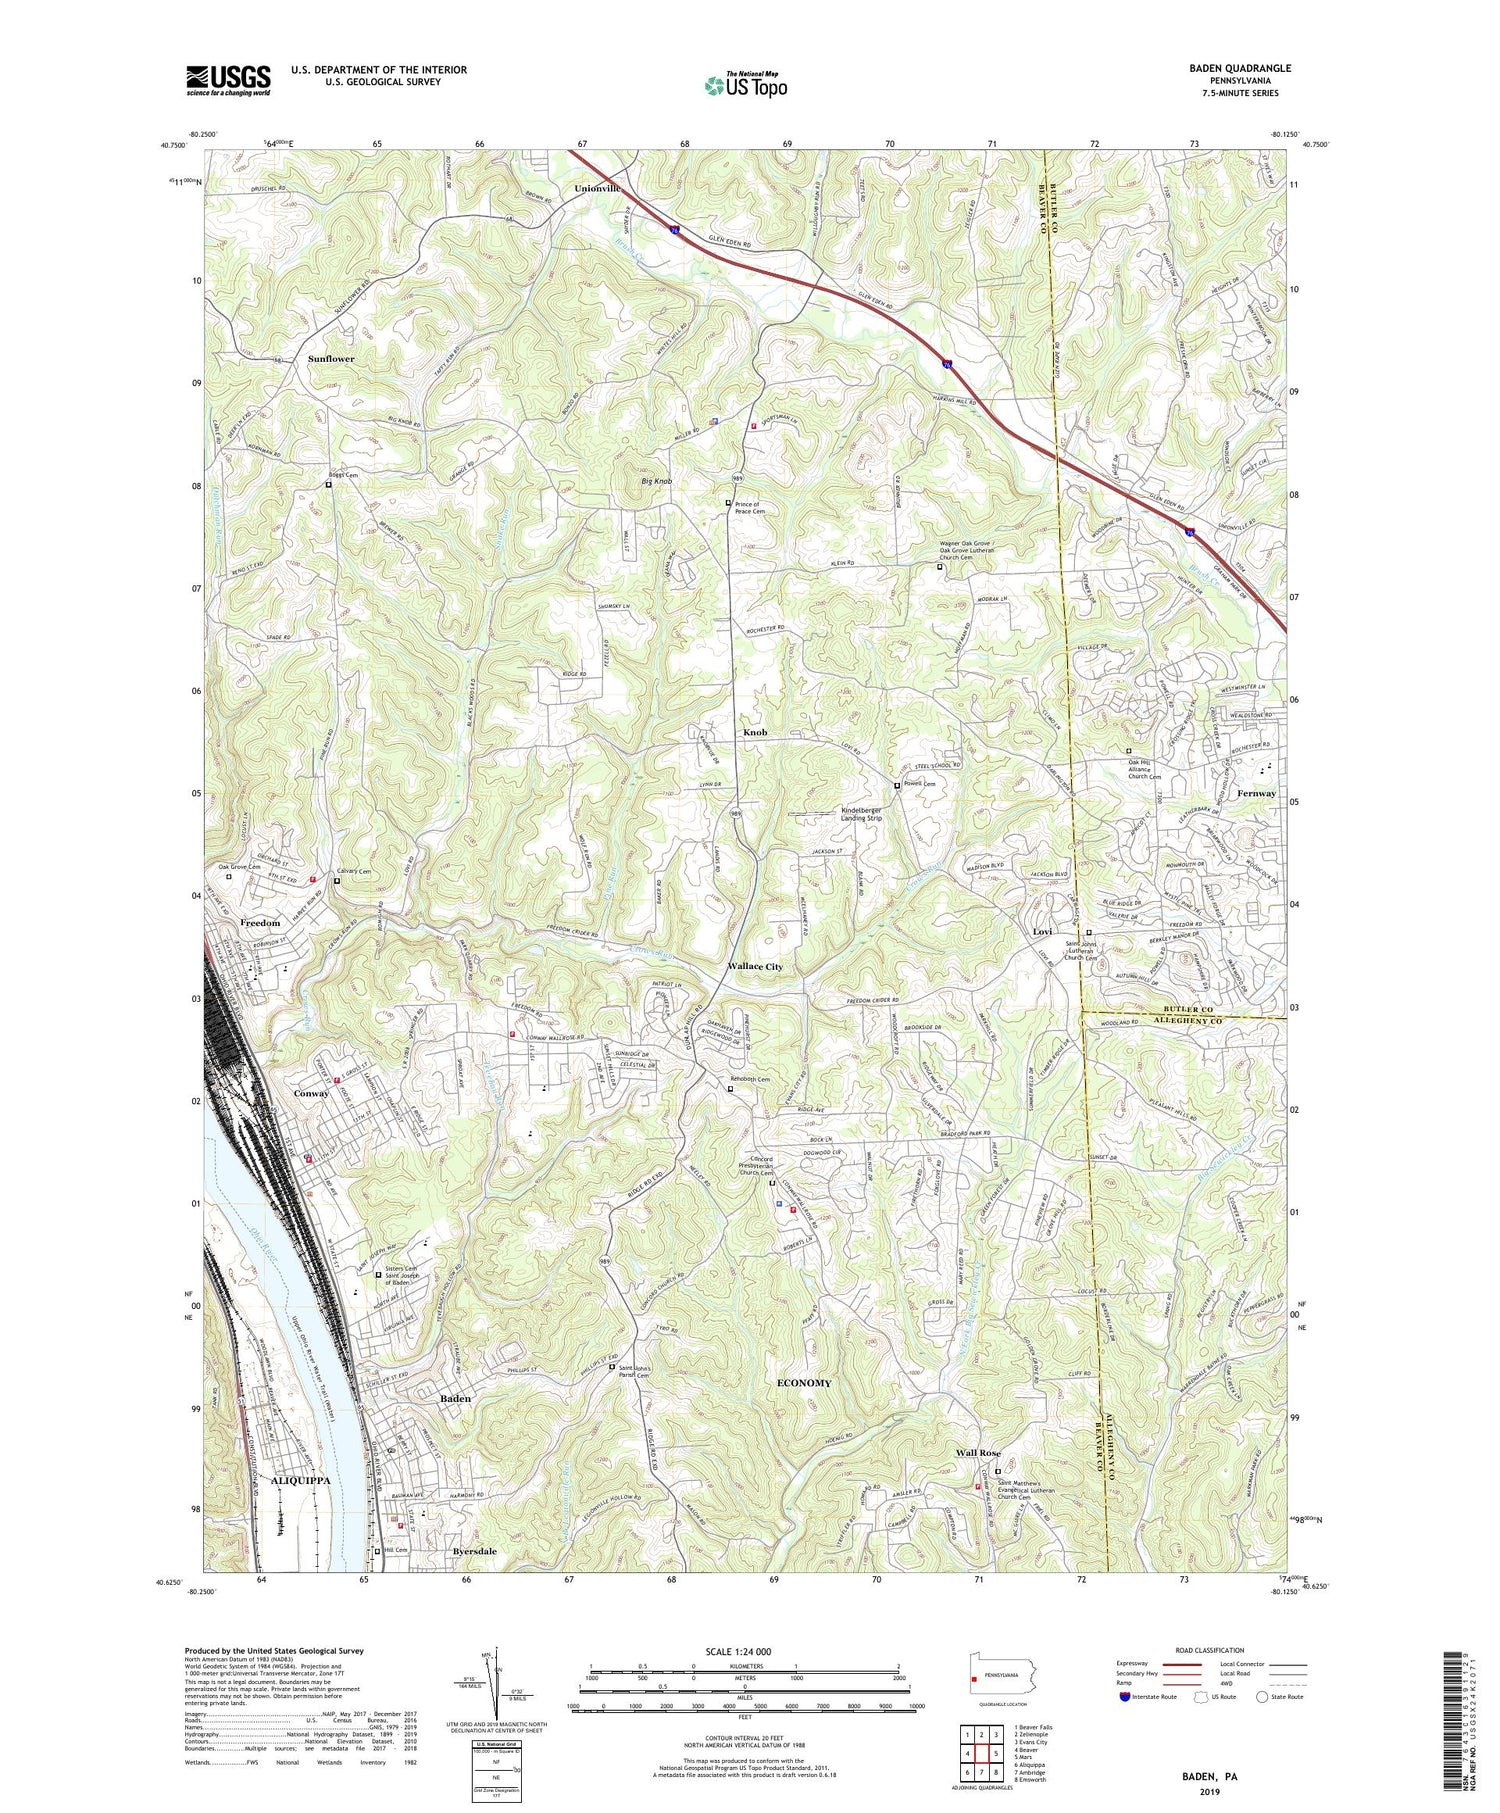 Baden Pennsylvania US Topo Map Image